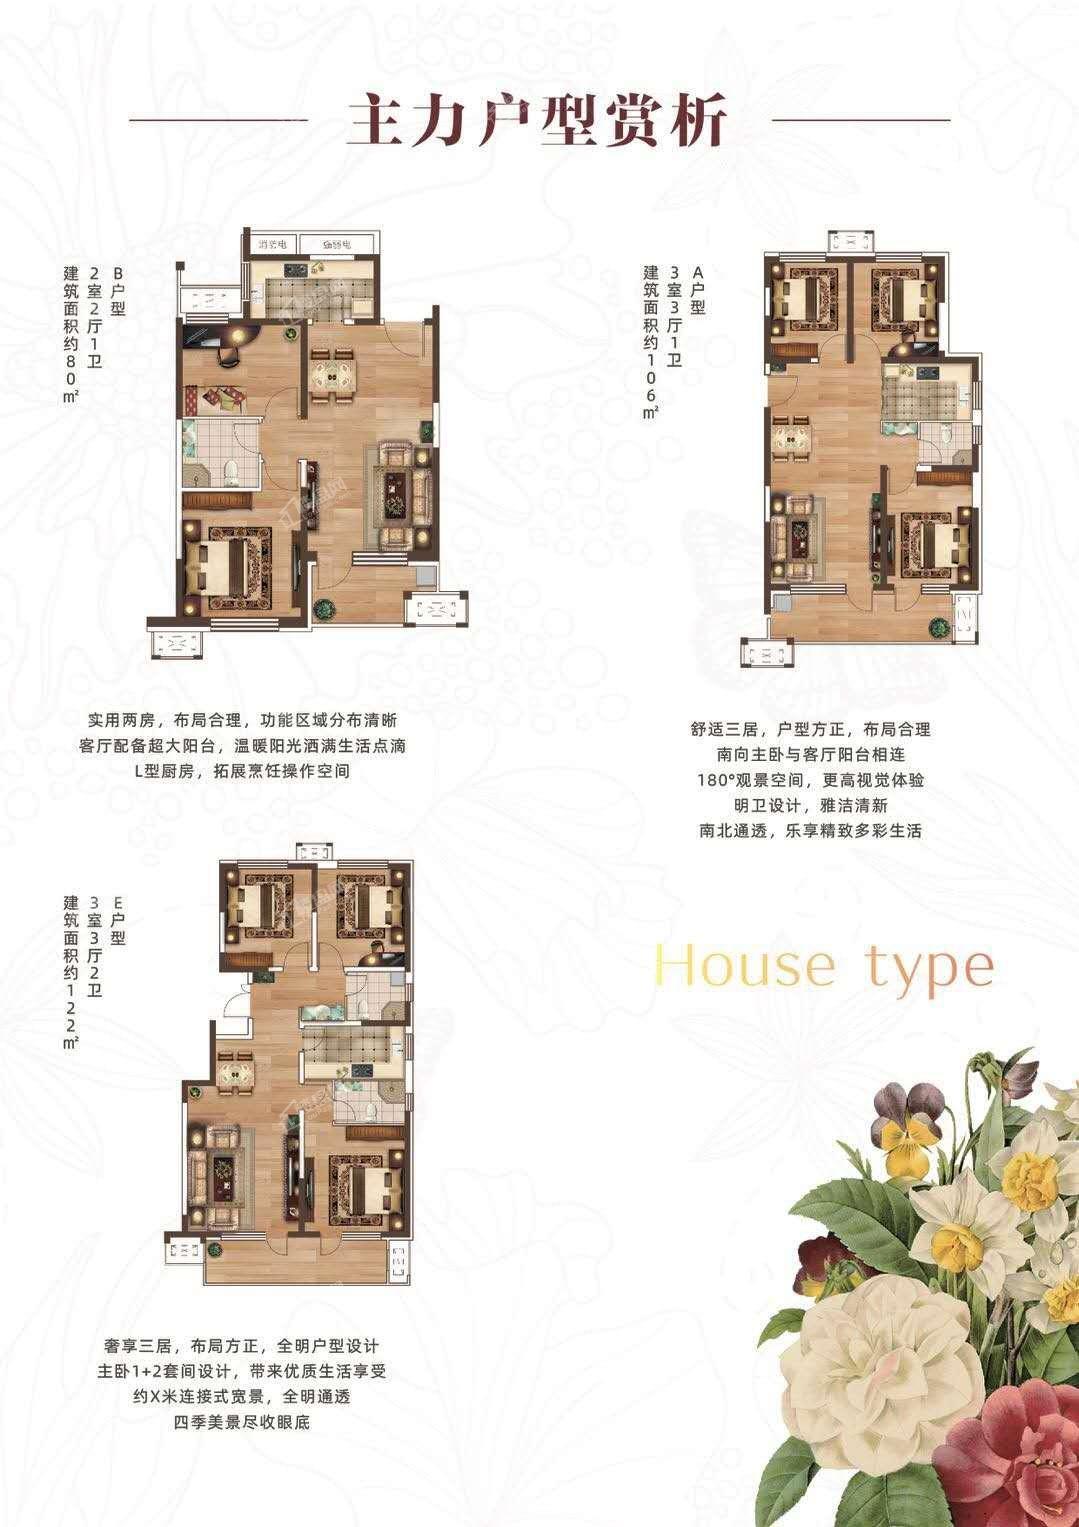 荣盛清芷苑项目均价约8500元/㎡起现有建面约80-122㎡2-3房高层住宅在售